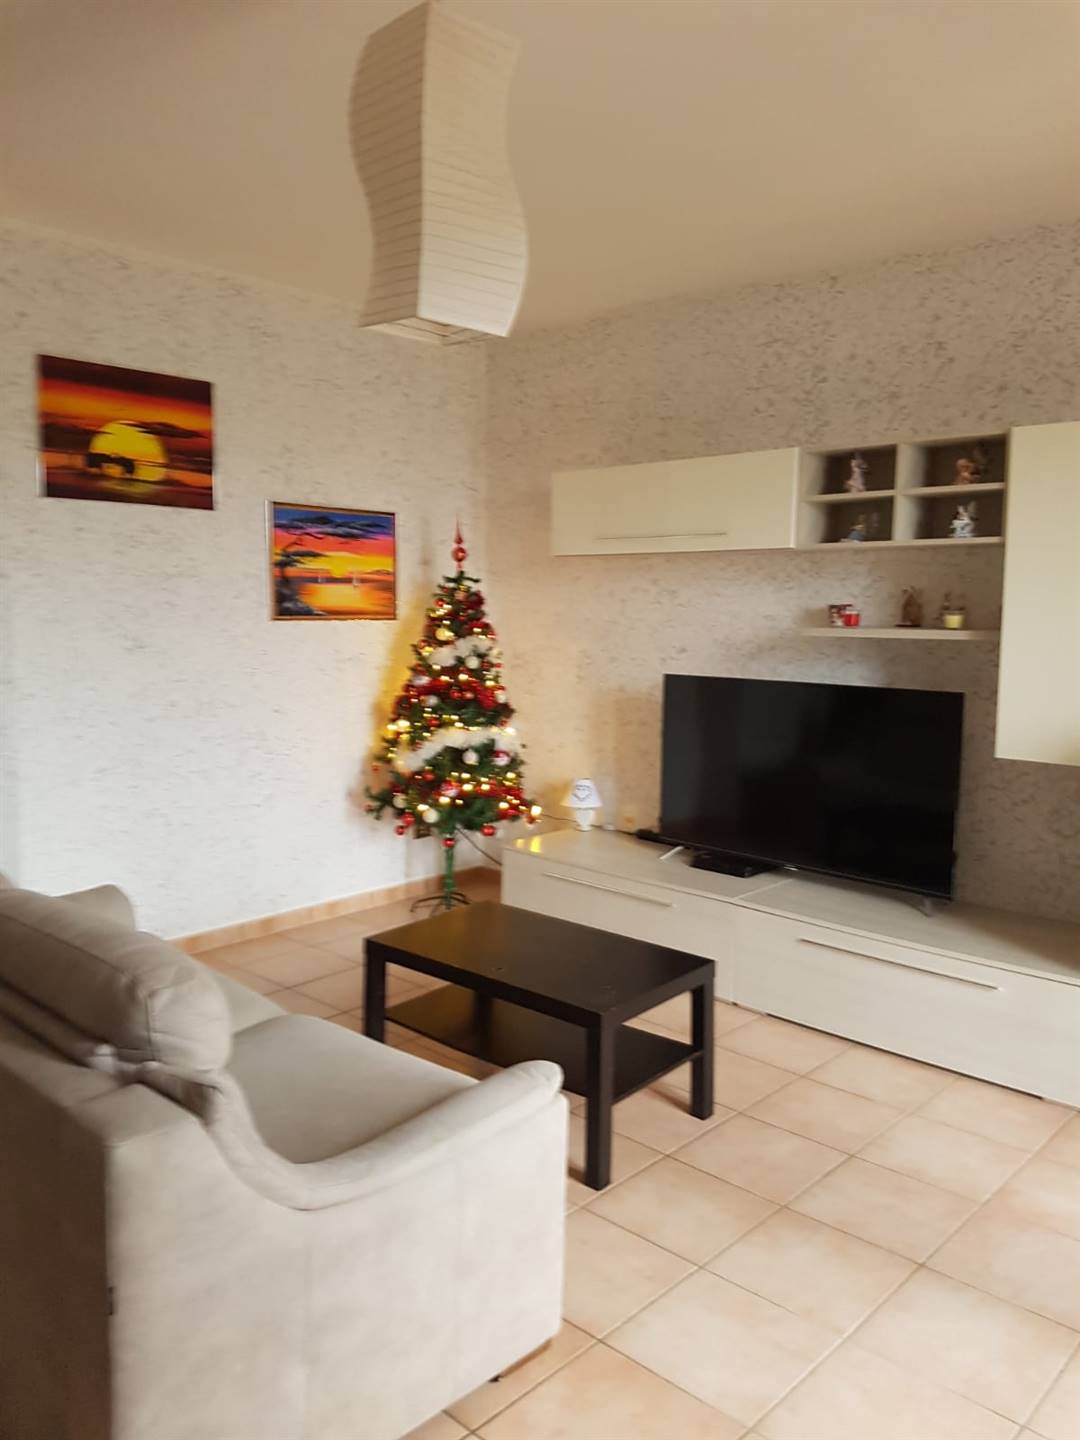 Appartamento in vendita a Tromello, 3 locali, prezzo € 90.000 | PortaleAgenzieImmobiliari.it